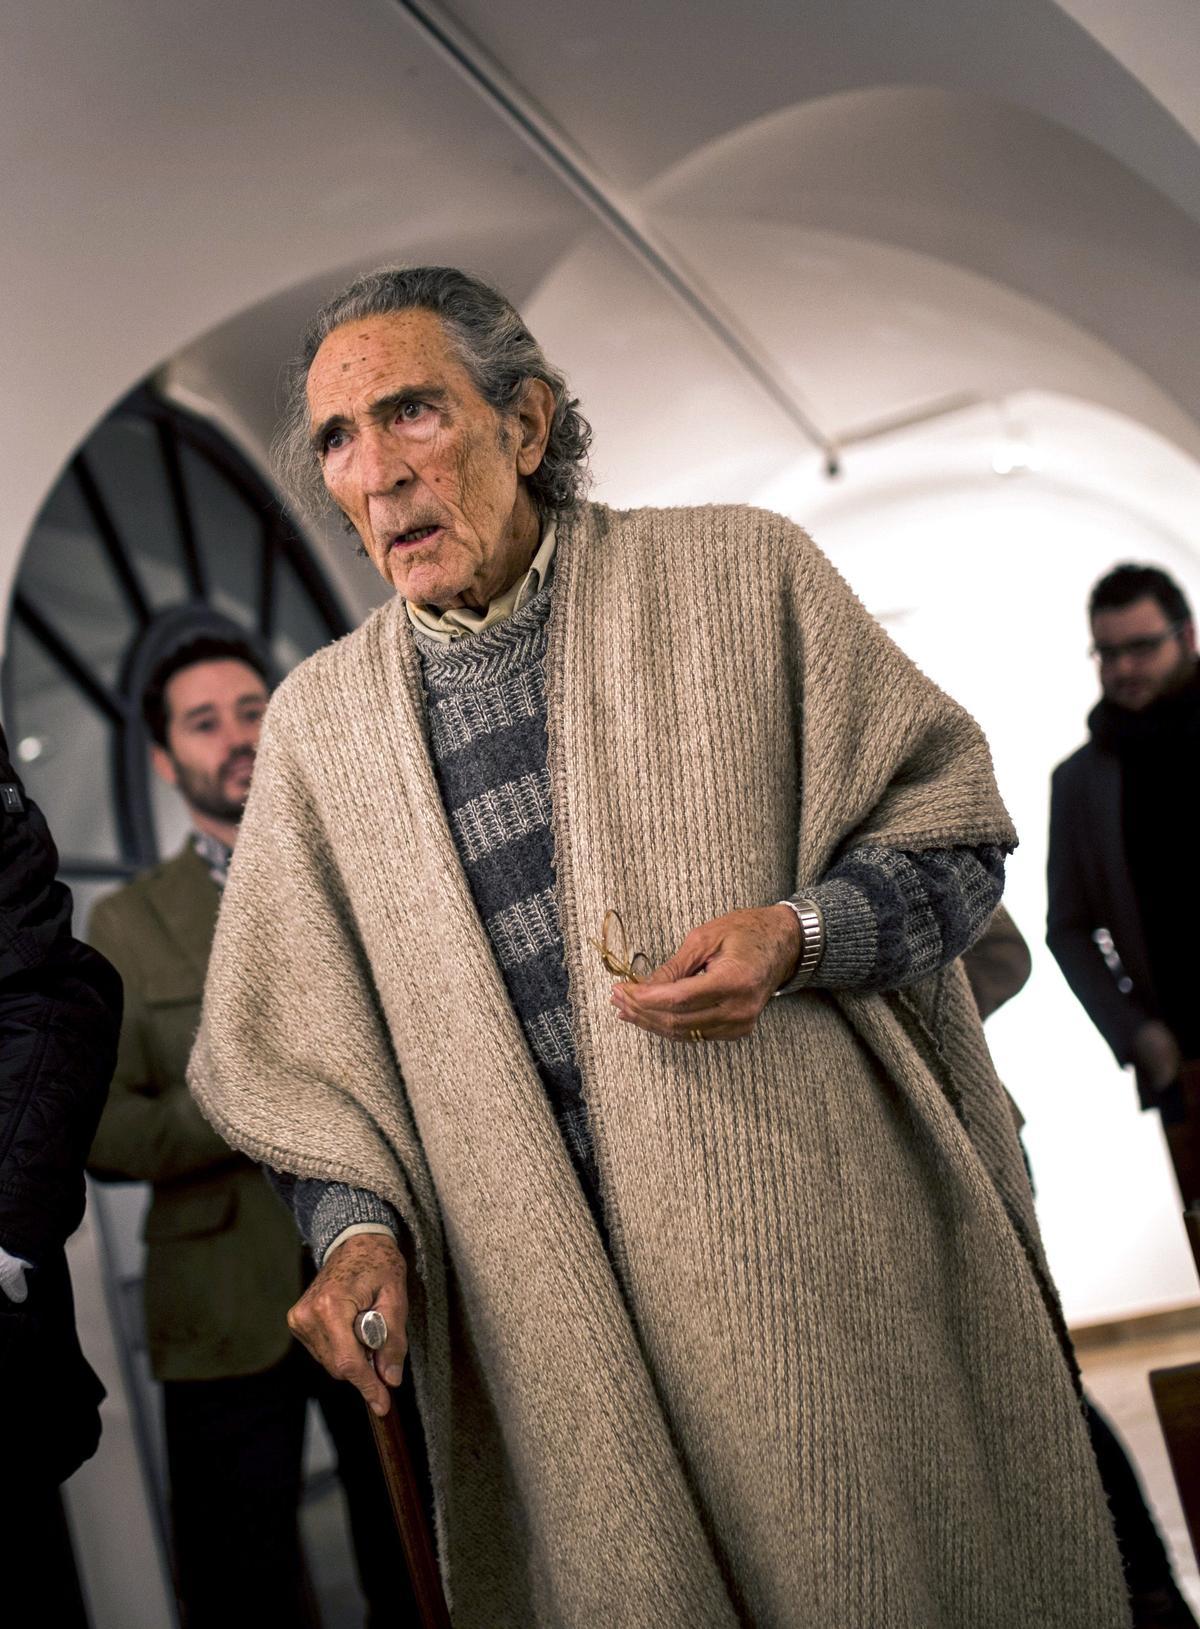 El escritor Antonio Gala, a su llegada a la fundación que lleva su nombre en Córdoba, donde asistió a la presentación del libro 305 Elizabeth street, del escrito Iván Canet. La imagen es de enero del 2016.